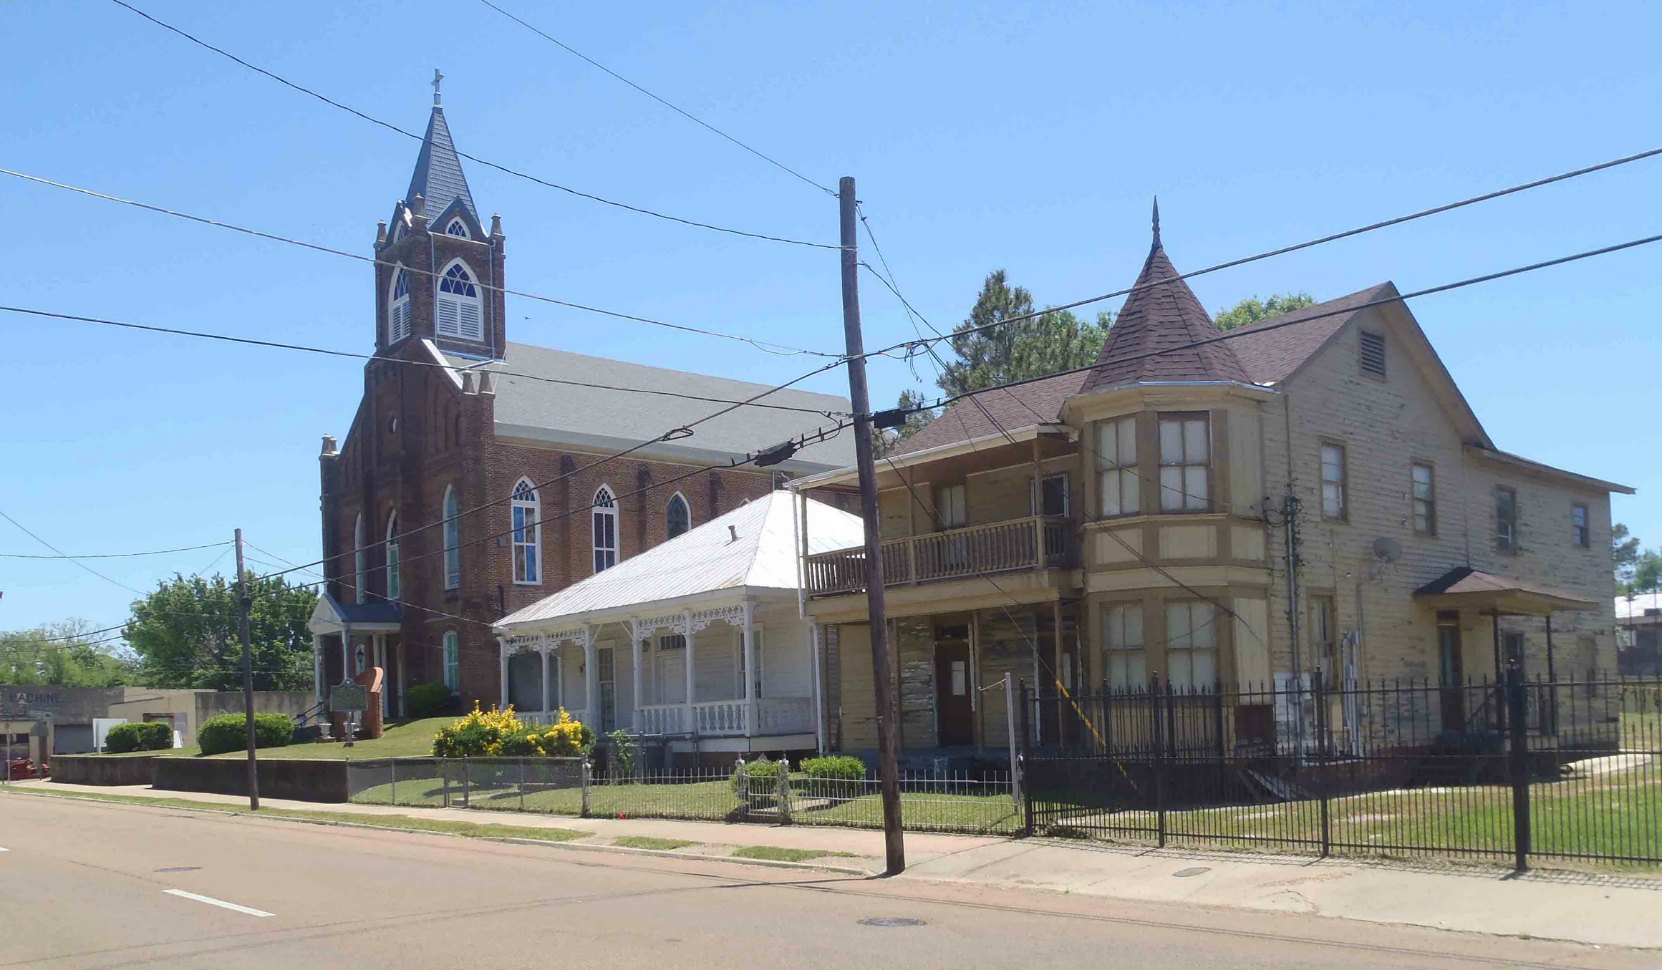 Holy Family Catholic Church, Natchez, Mississippi and some of the adjacent neighborhood houses.